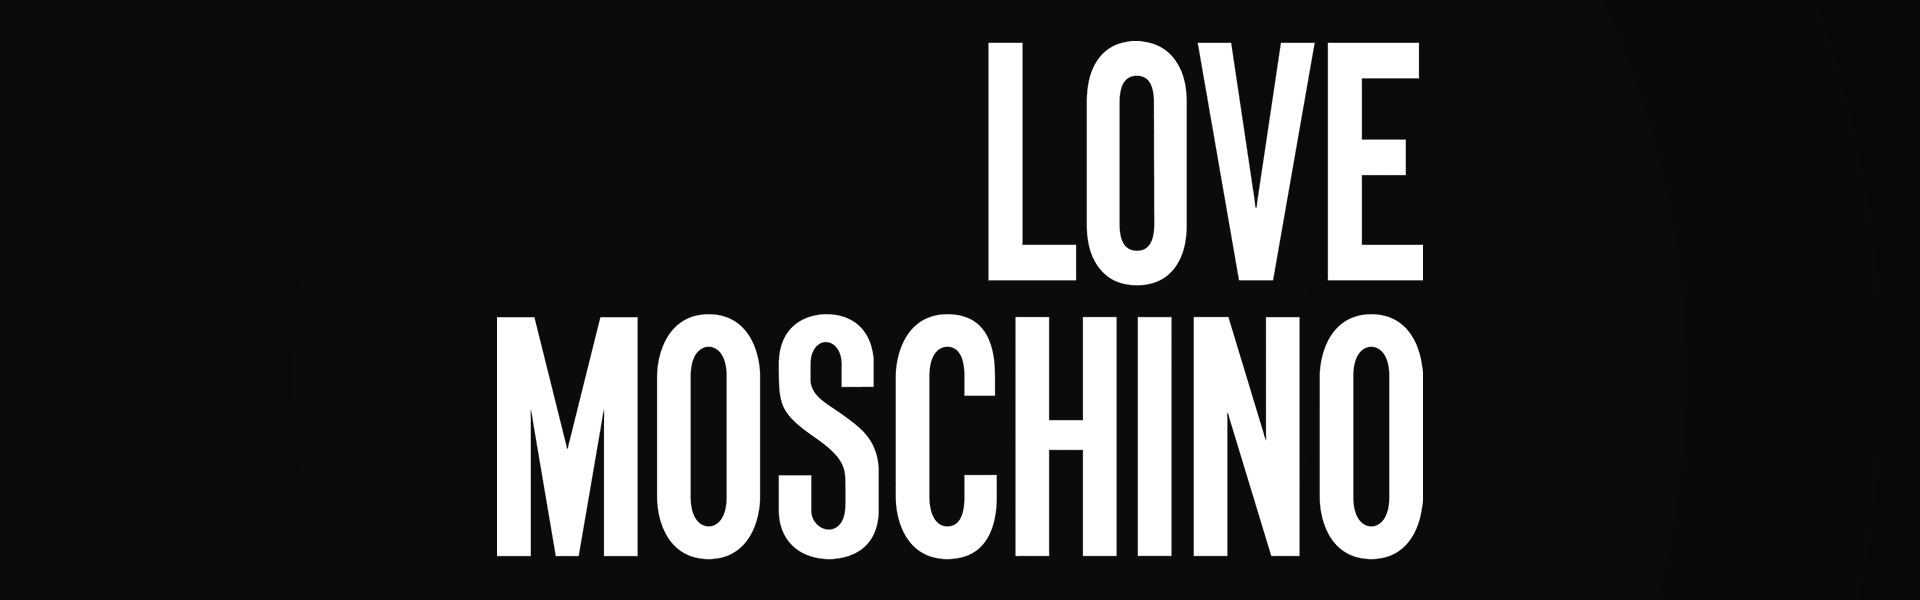 Love Moschino naisten käsilaukku, ruskea. 